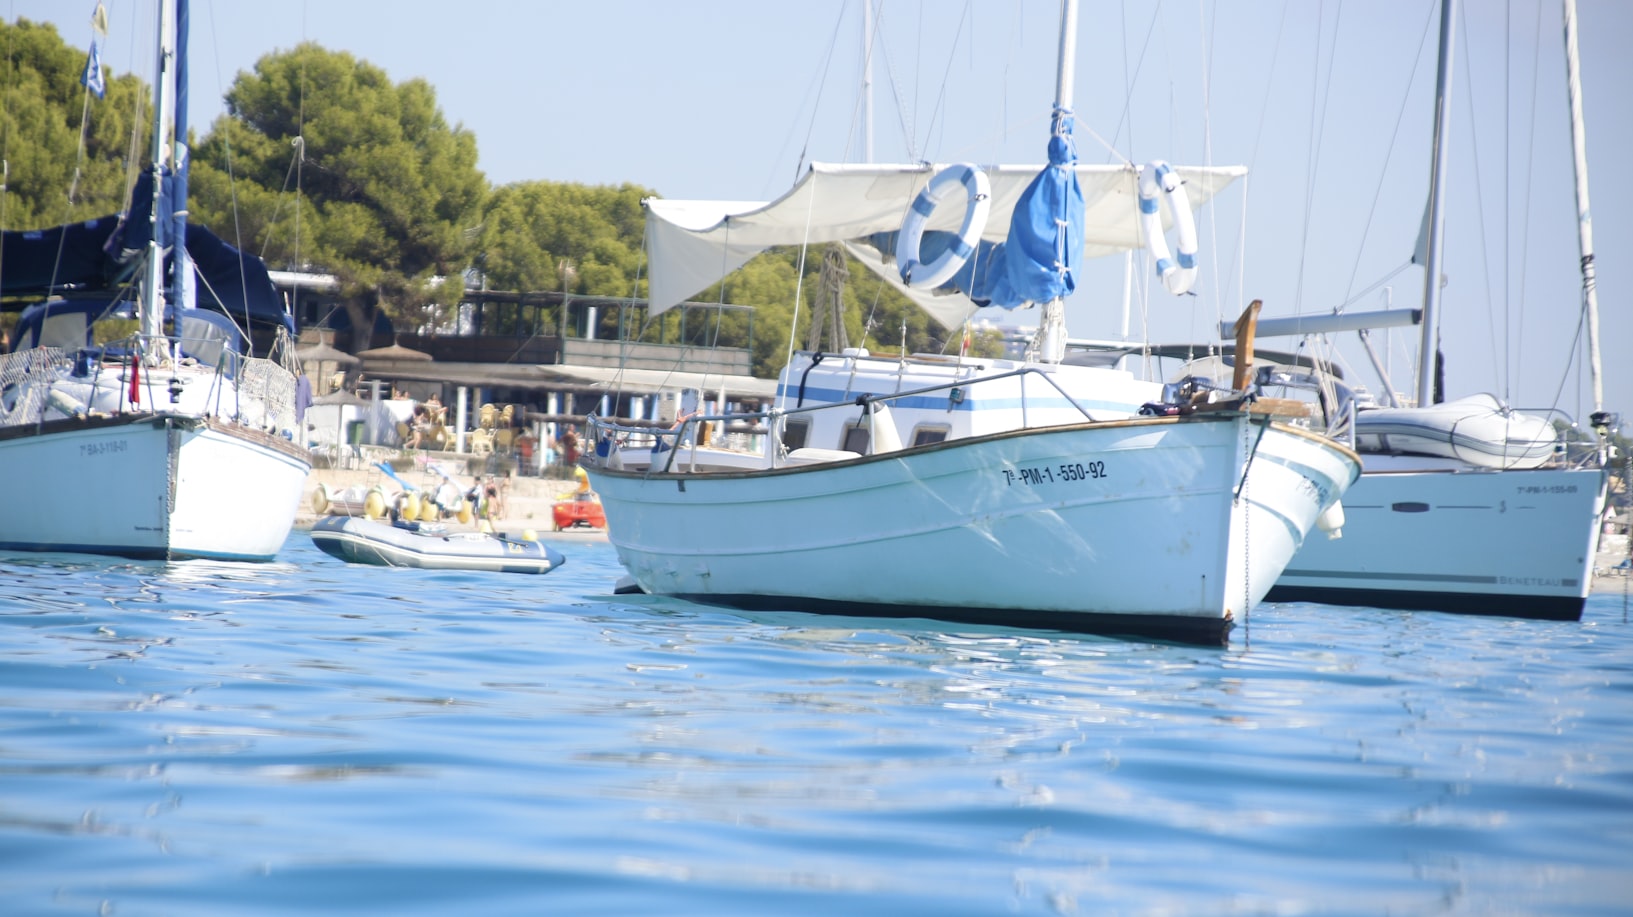 Mallorca boats in the sea